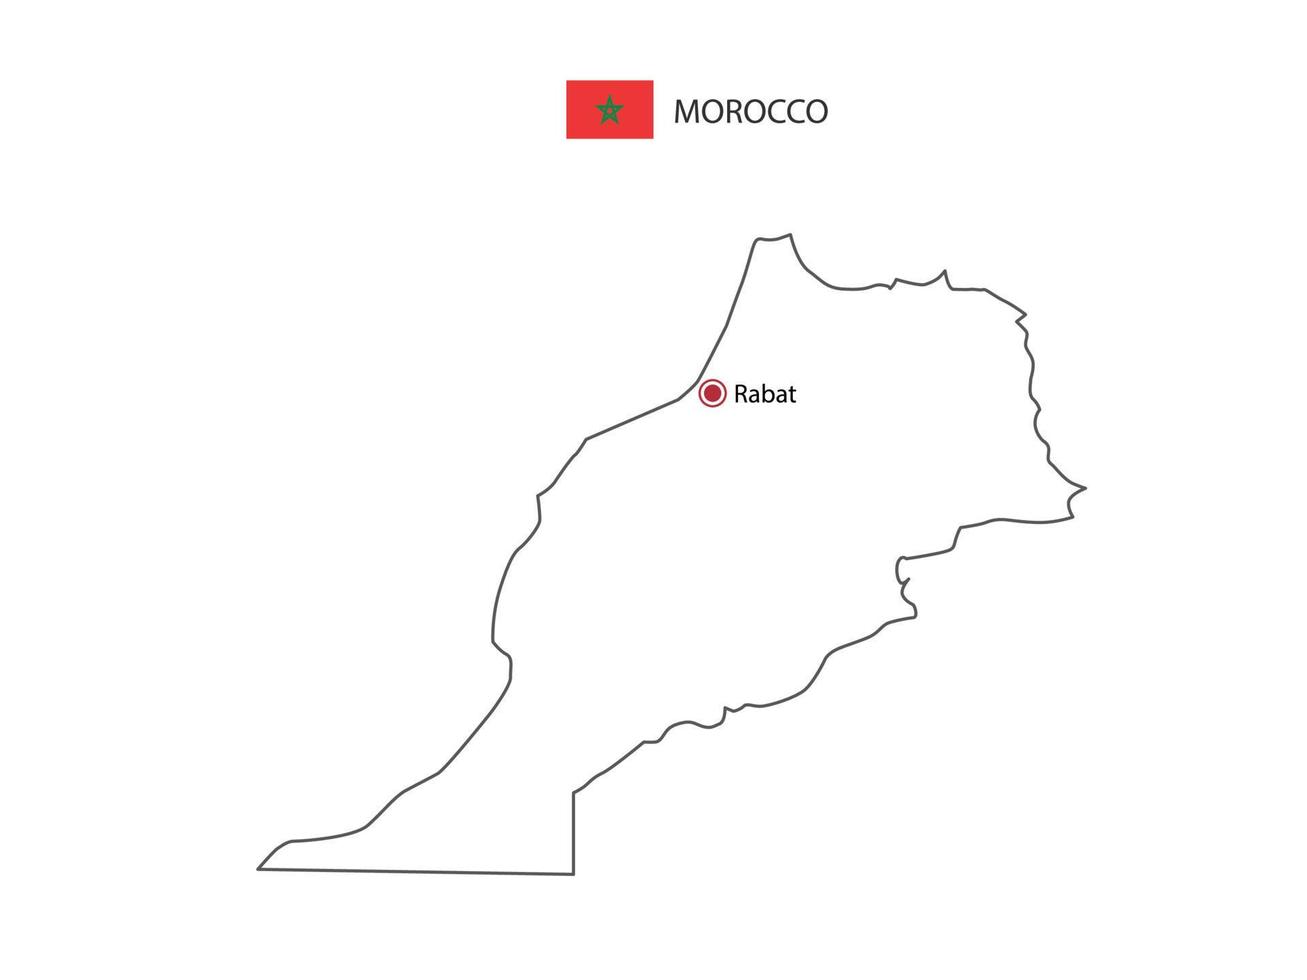 dibujar a mano el vector de línea negra delgada del mapa de marruecos con la ciudad capital rabat sobre fondo blanco.